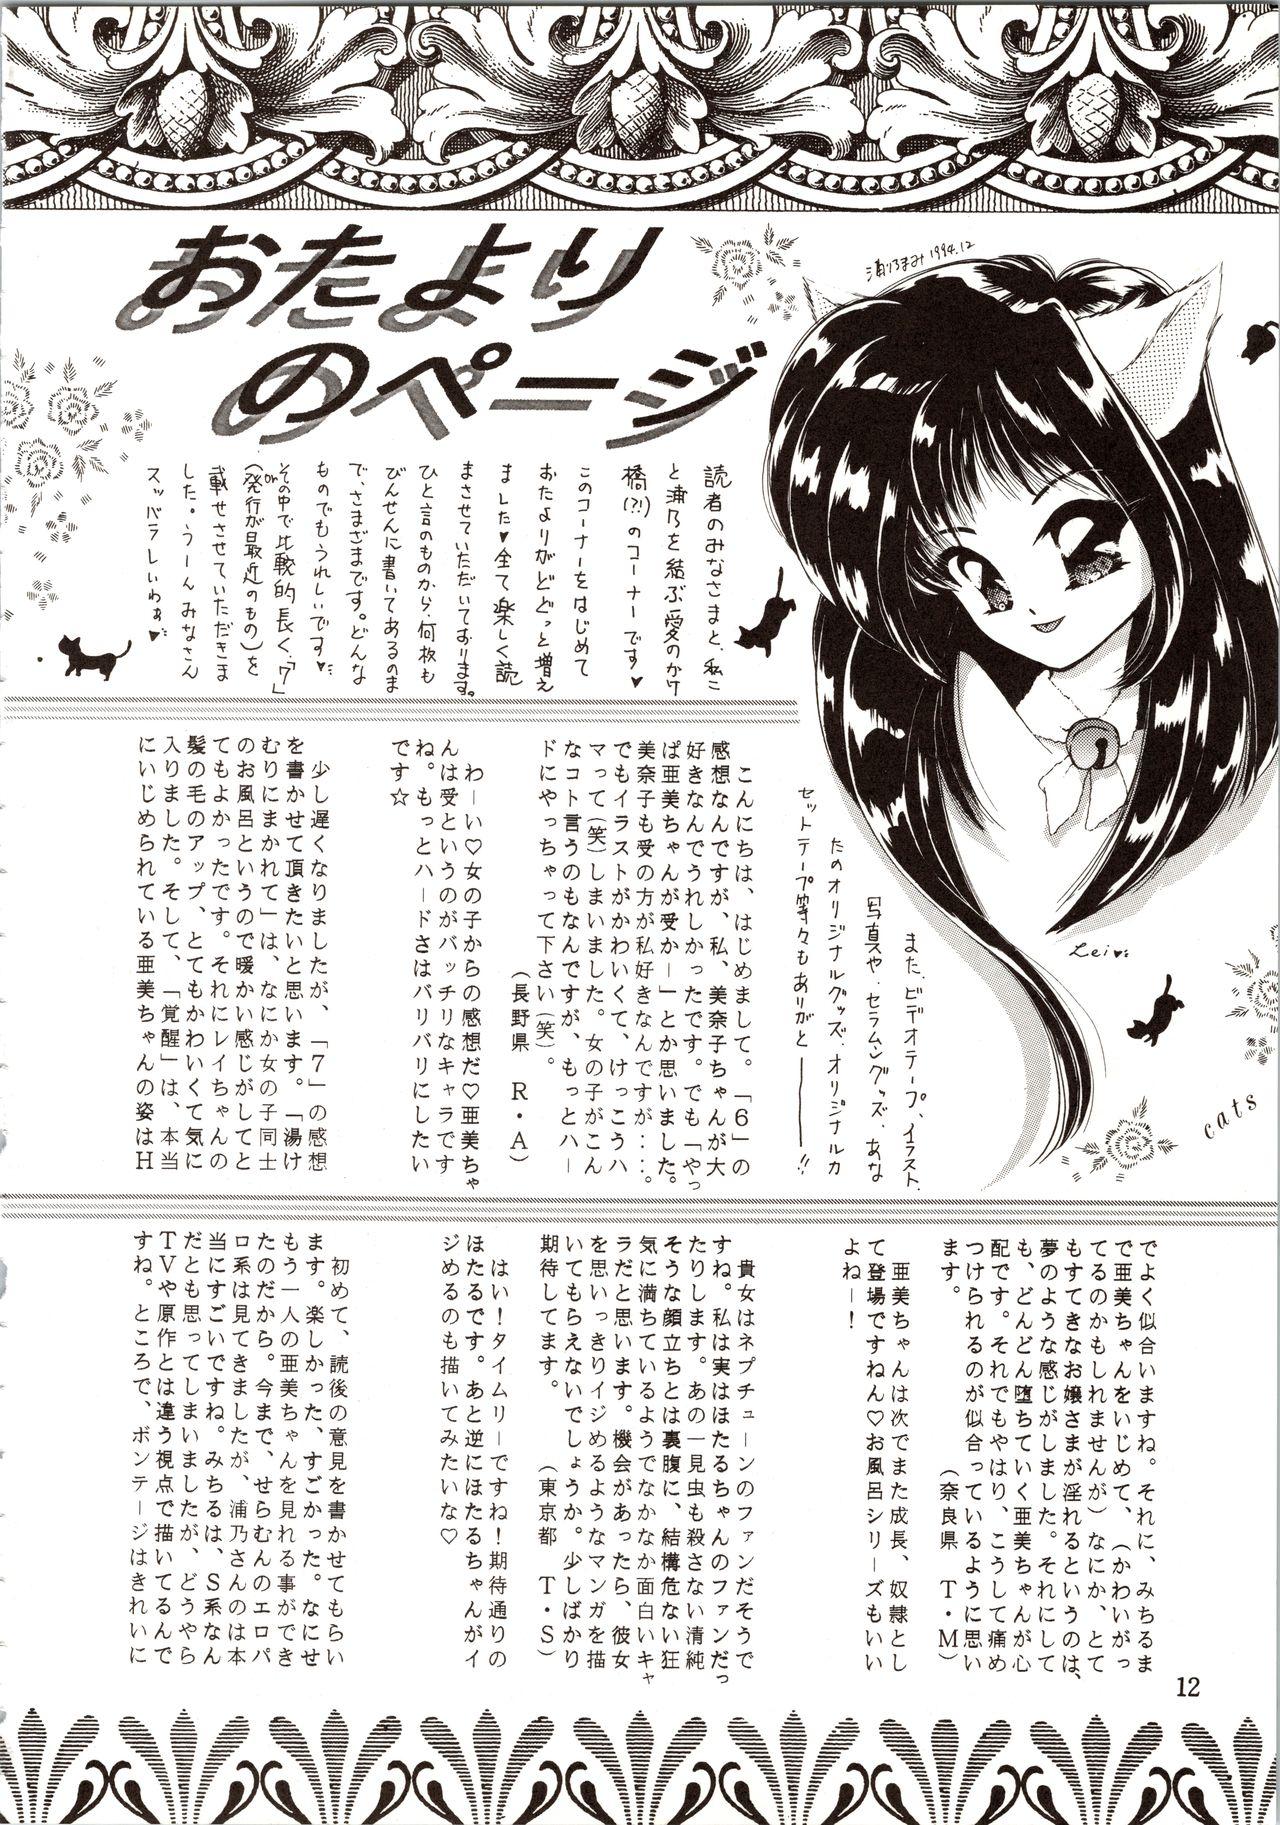 Hetero Tsukiyo no Tawamure 8 - Sailor moon Massage Creep - Page 12